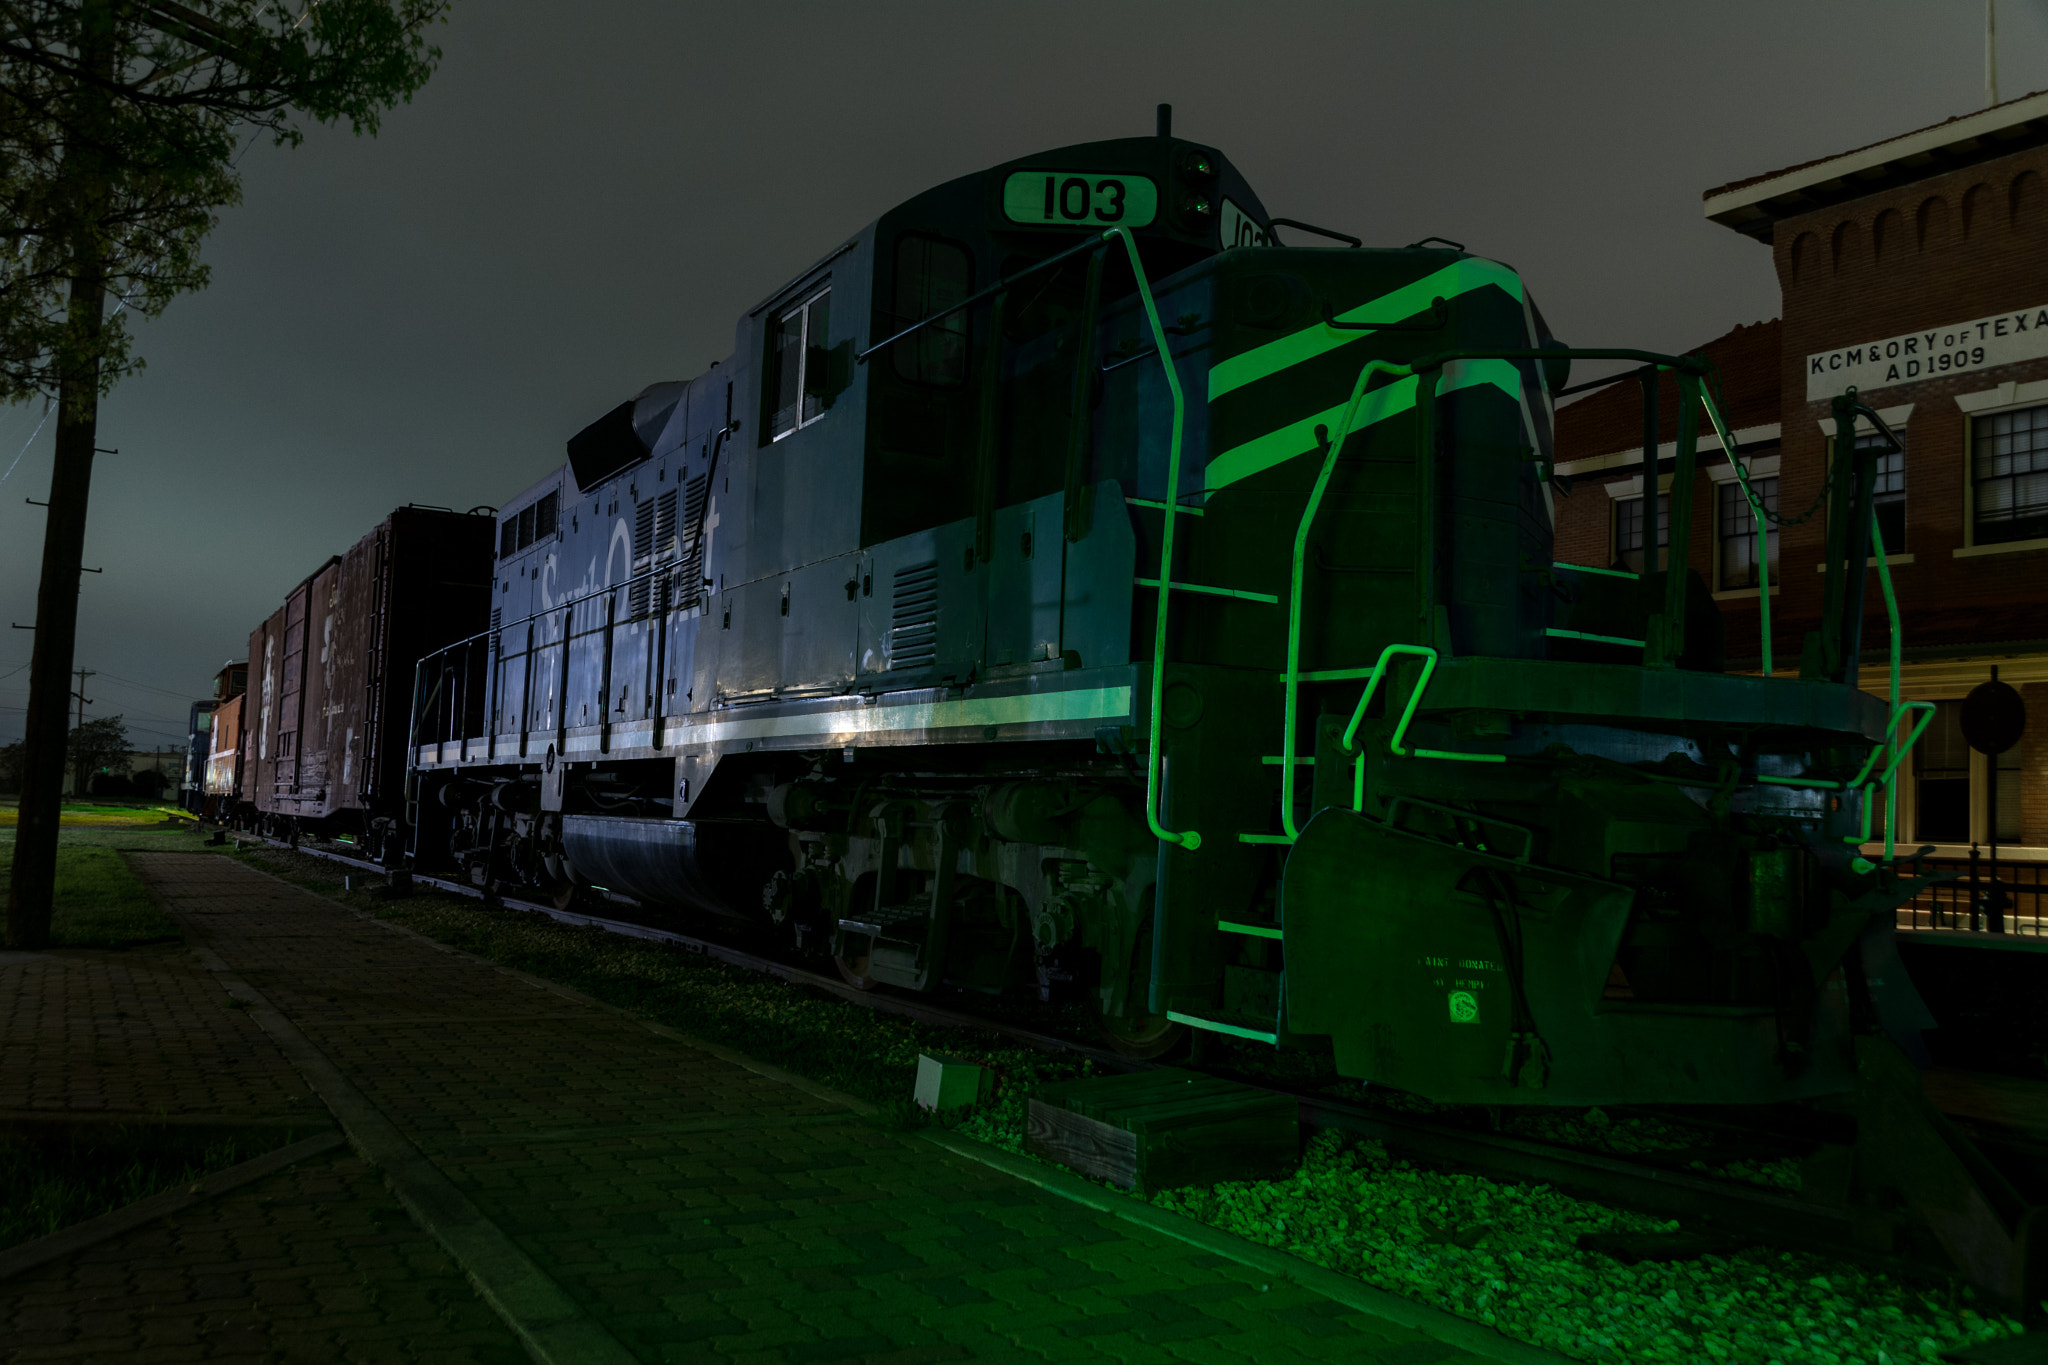 Nikon D7100 sample photo. Old train at night photography